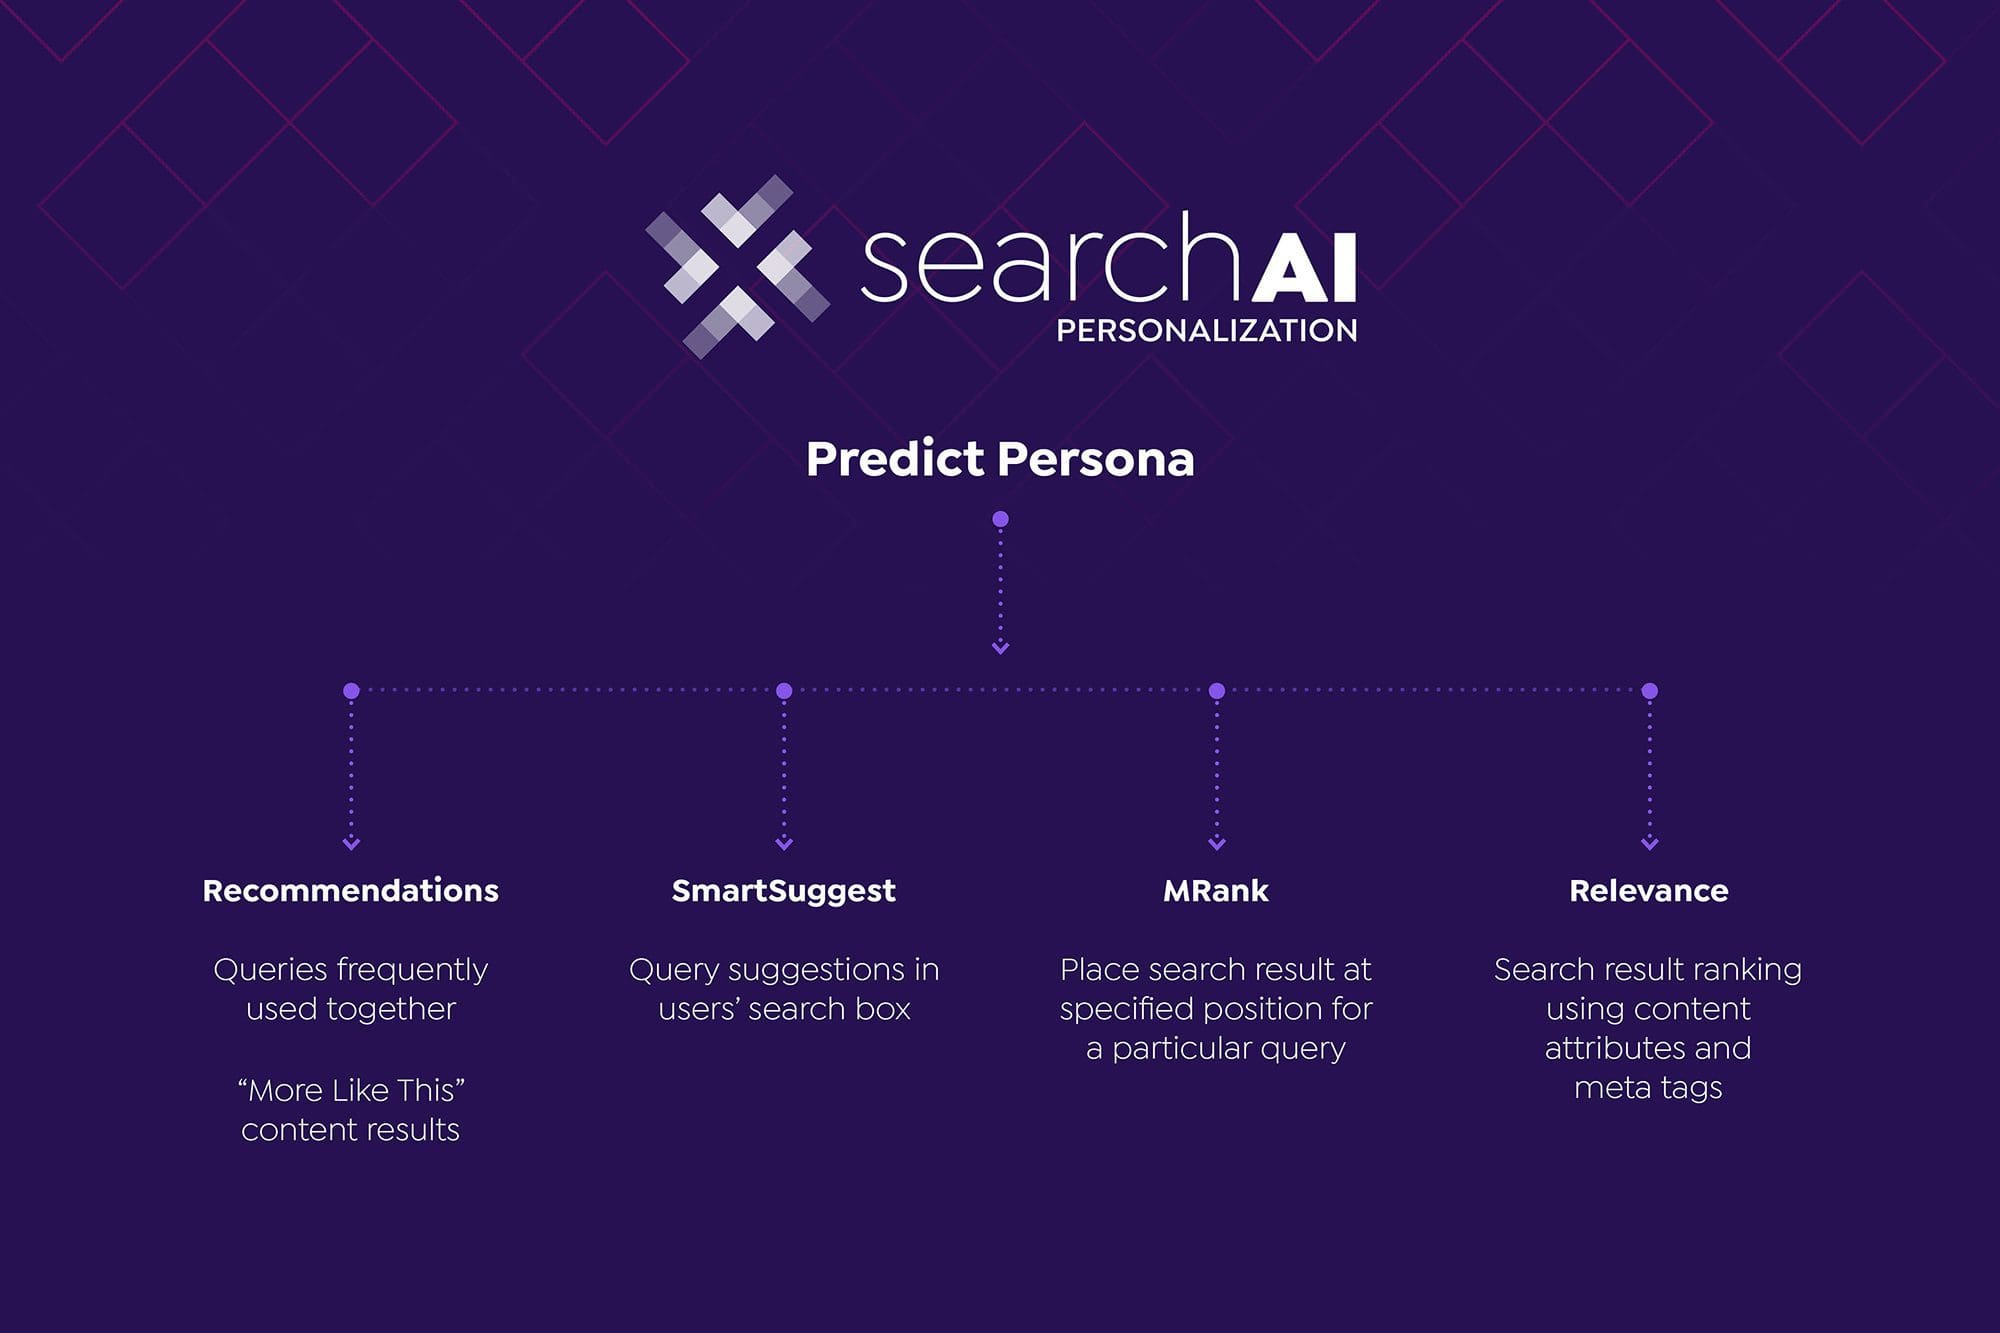 SearchAI Personalization Predict Persona